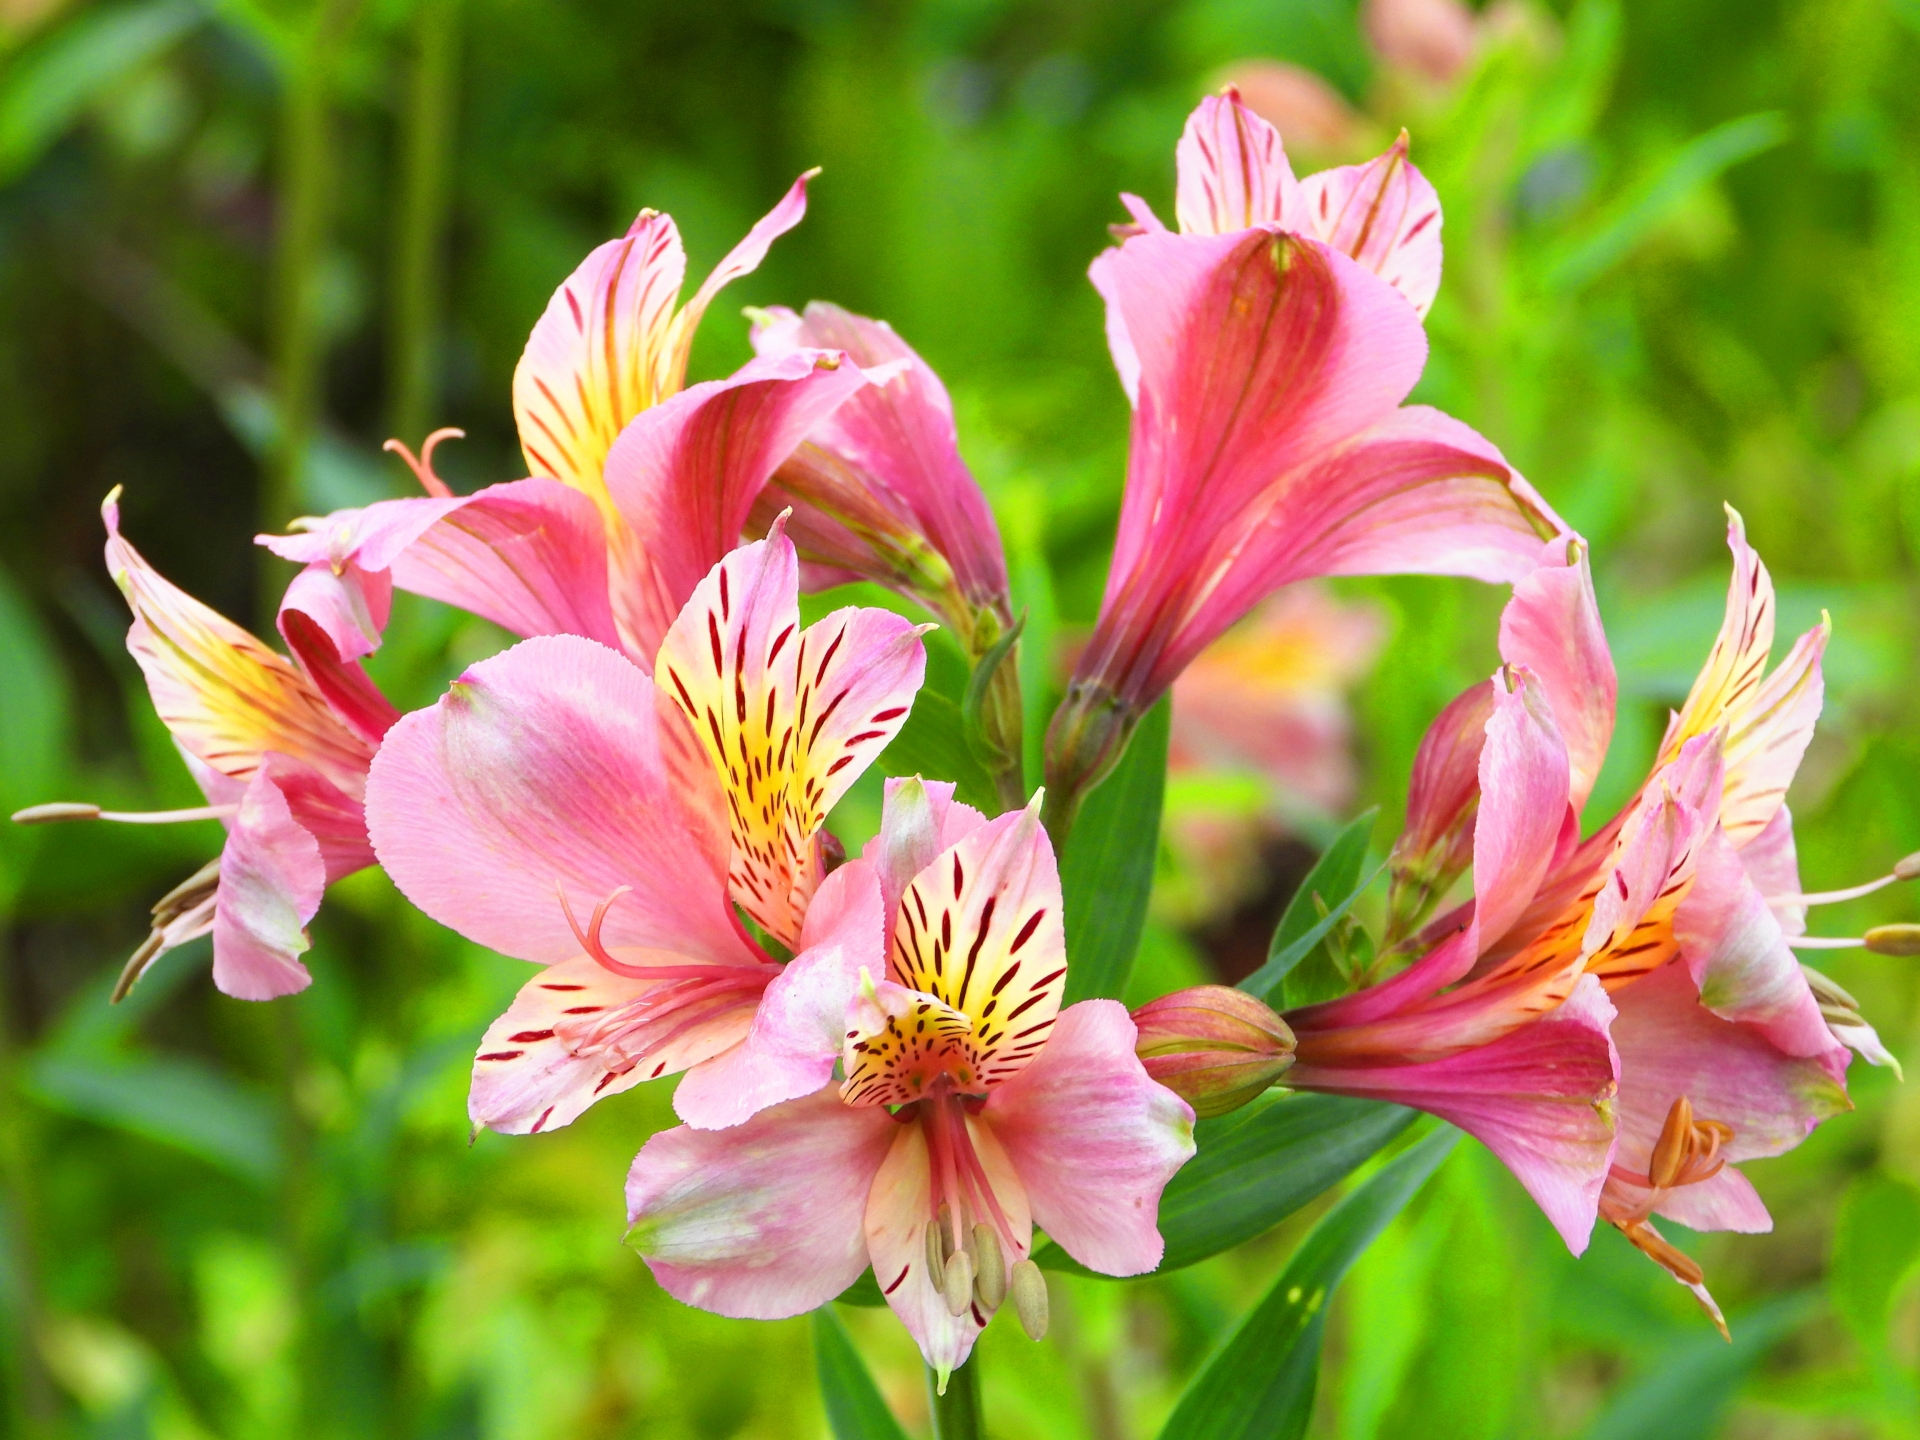 アルストロメリアとは 花の特徴 花言葉 育て方 手入れ方法を紹介 Hanasaku